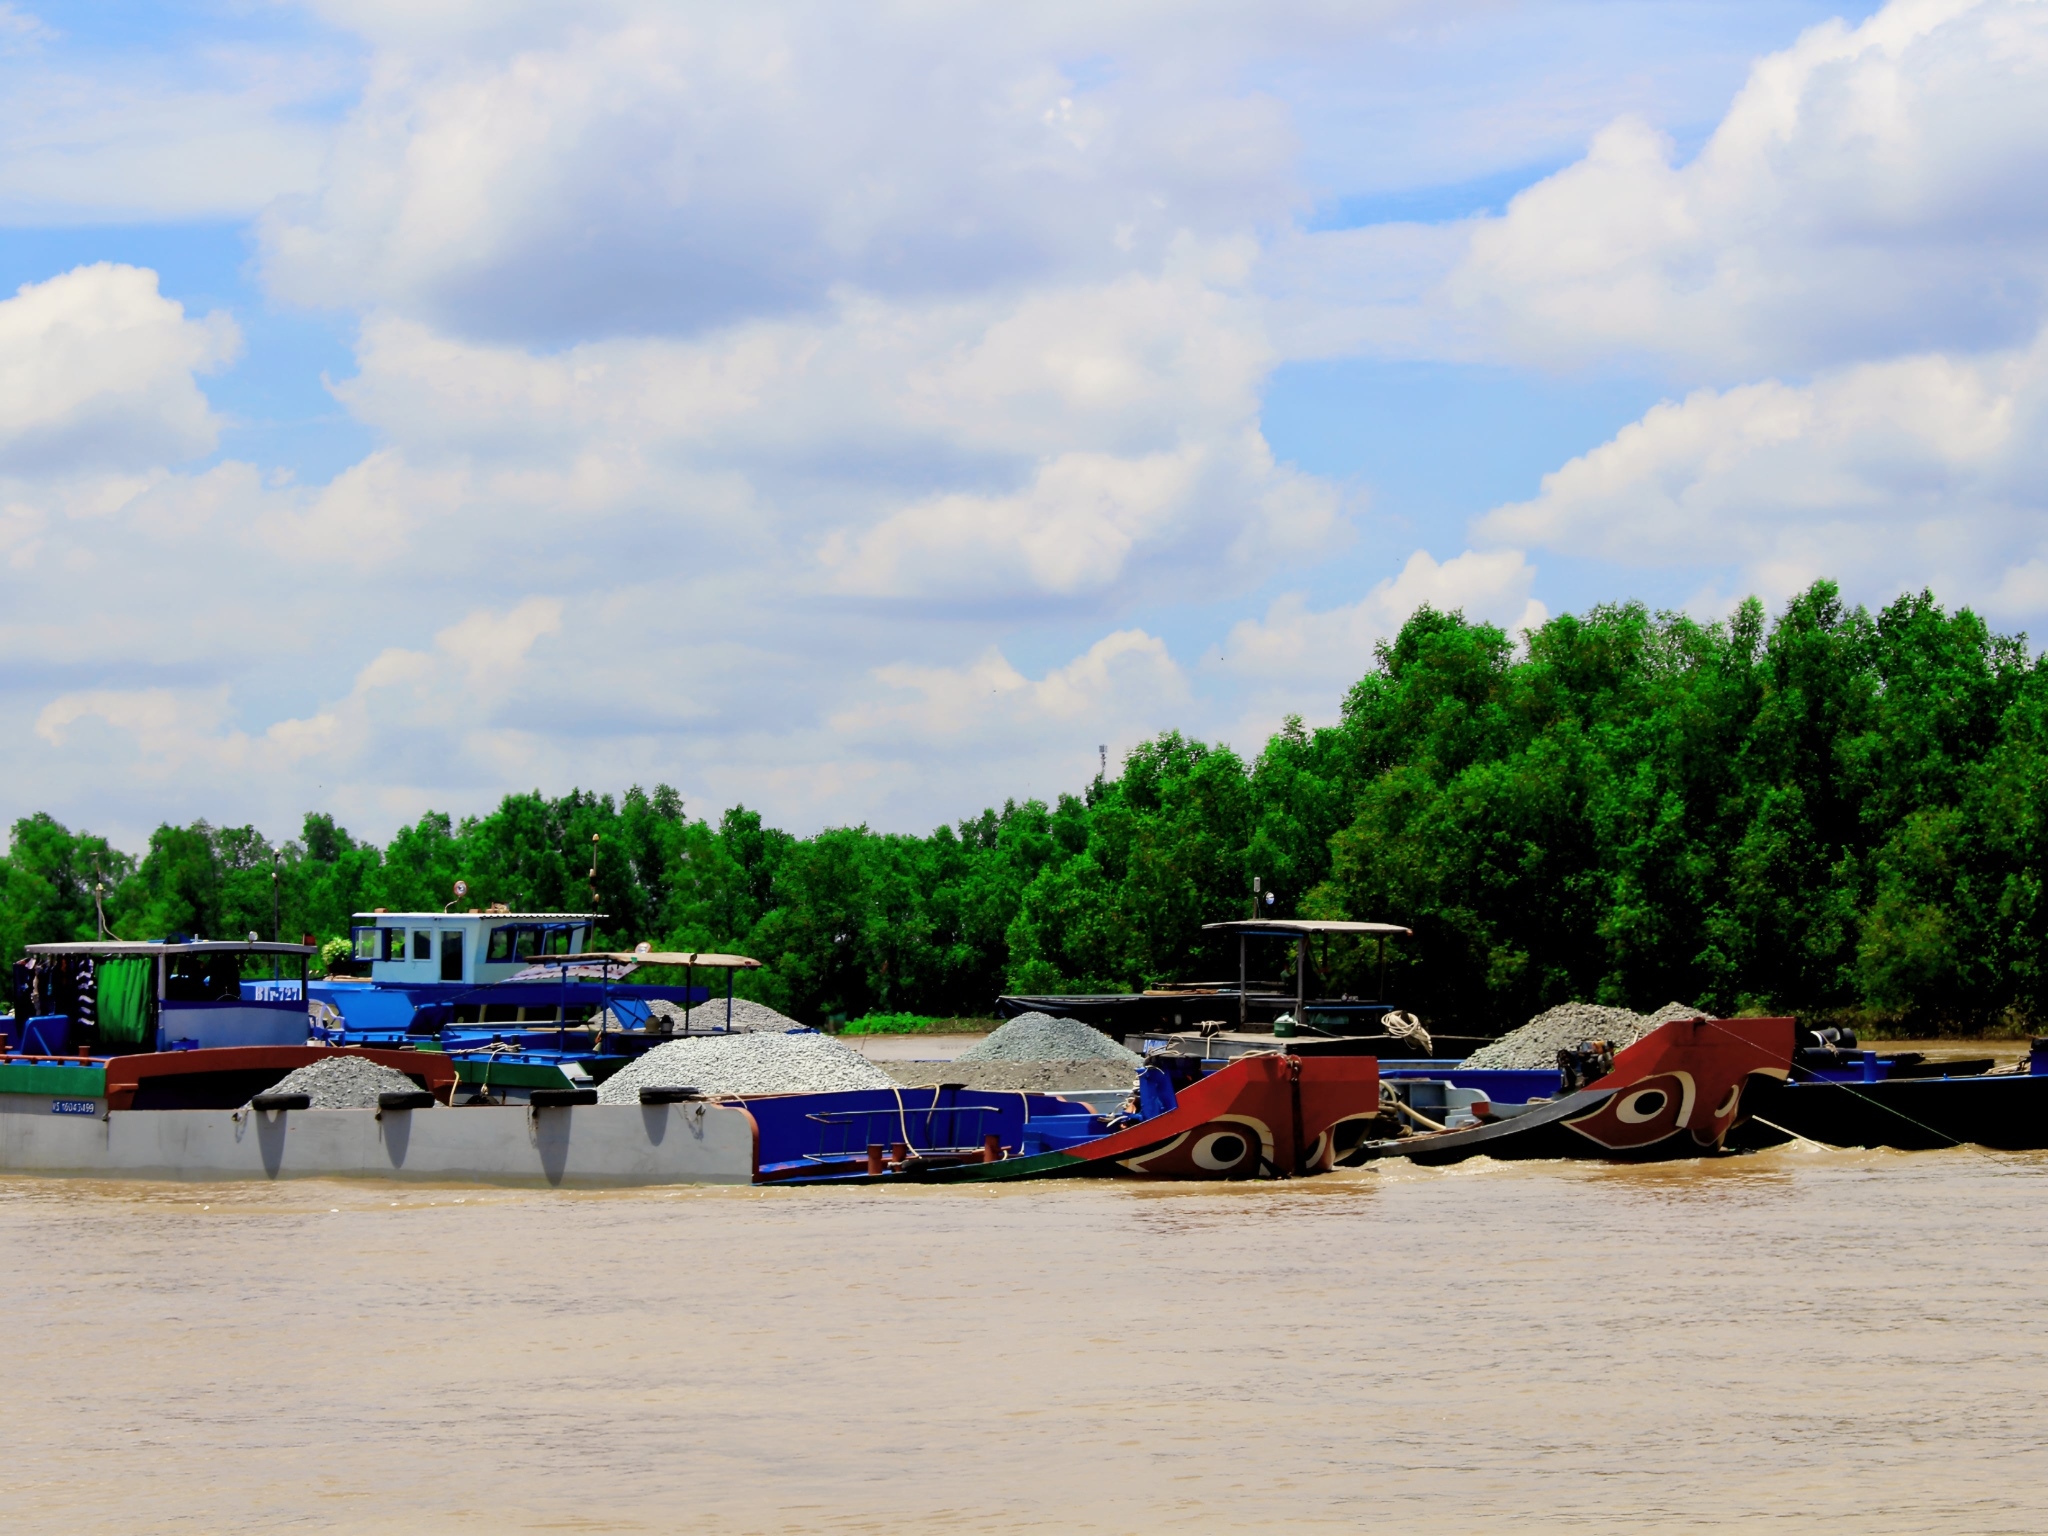 MK06: 通过湄公河到达柬埔寨（凯比-朱笃）